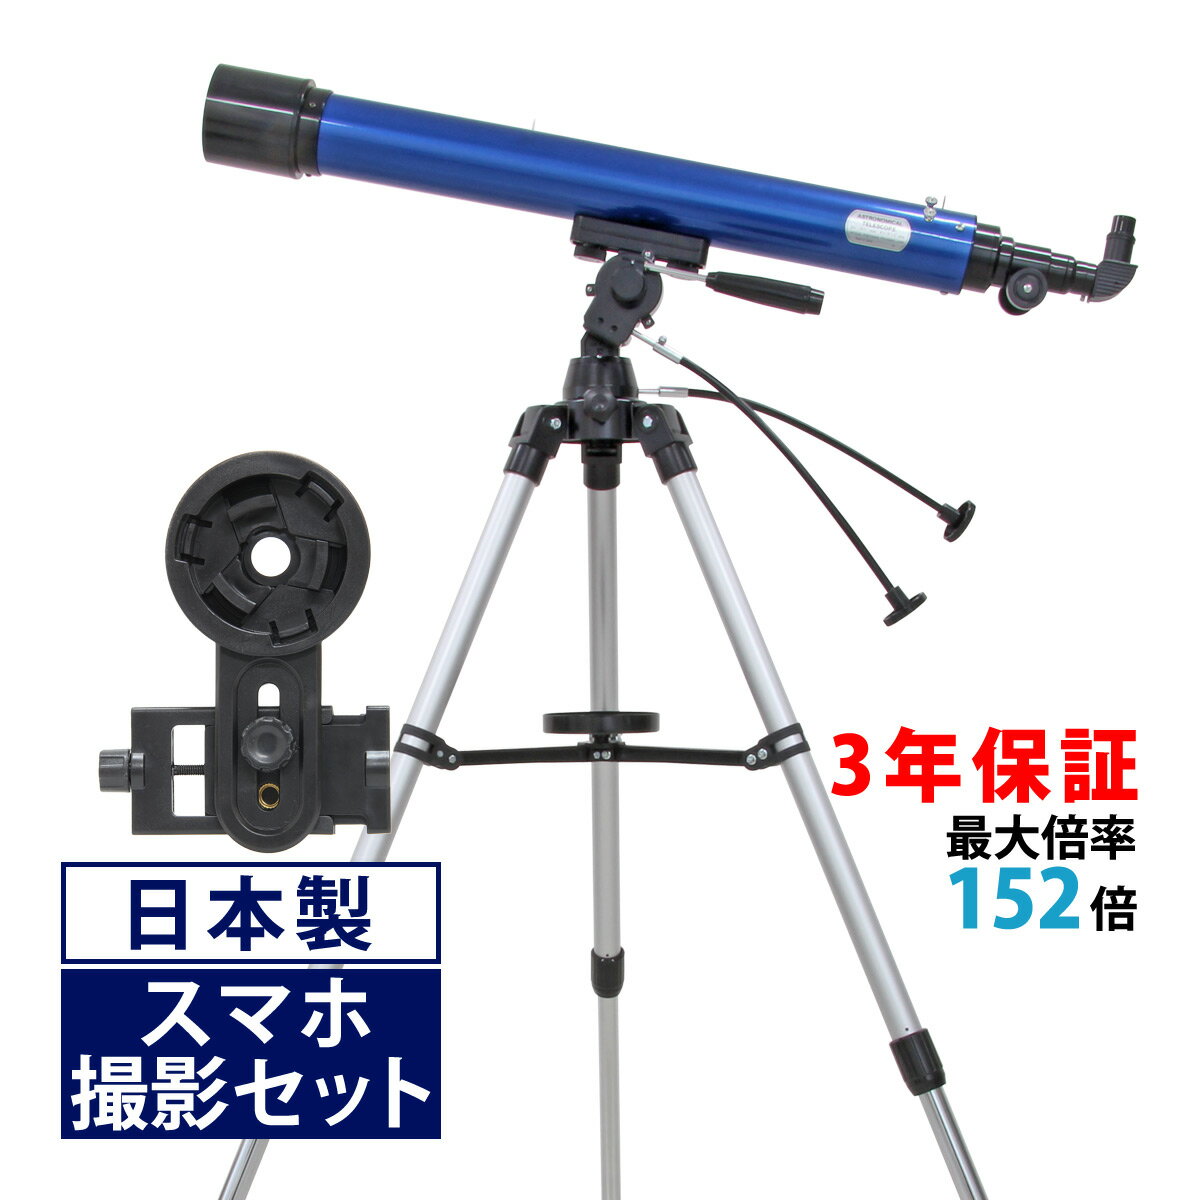 天体望遠鏡 天体望遠鏡 スマホ 撮影 初心者 リゲル80 天体望遠鏡セット 日本製 80mm 口径 望遠鏡 天体 小学生 携帯 屈折式 ブルー 天体ガイドブック付き 子供用 スマートフォン 天体観測